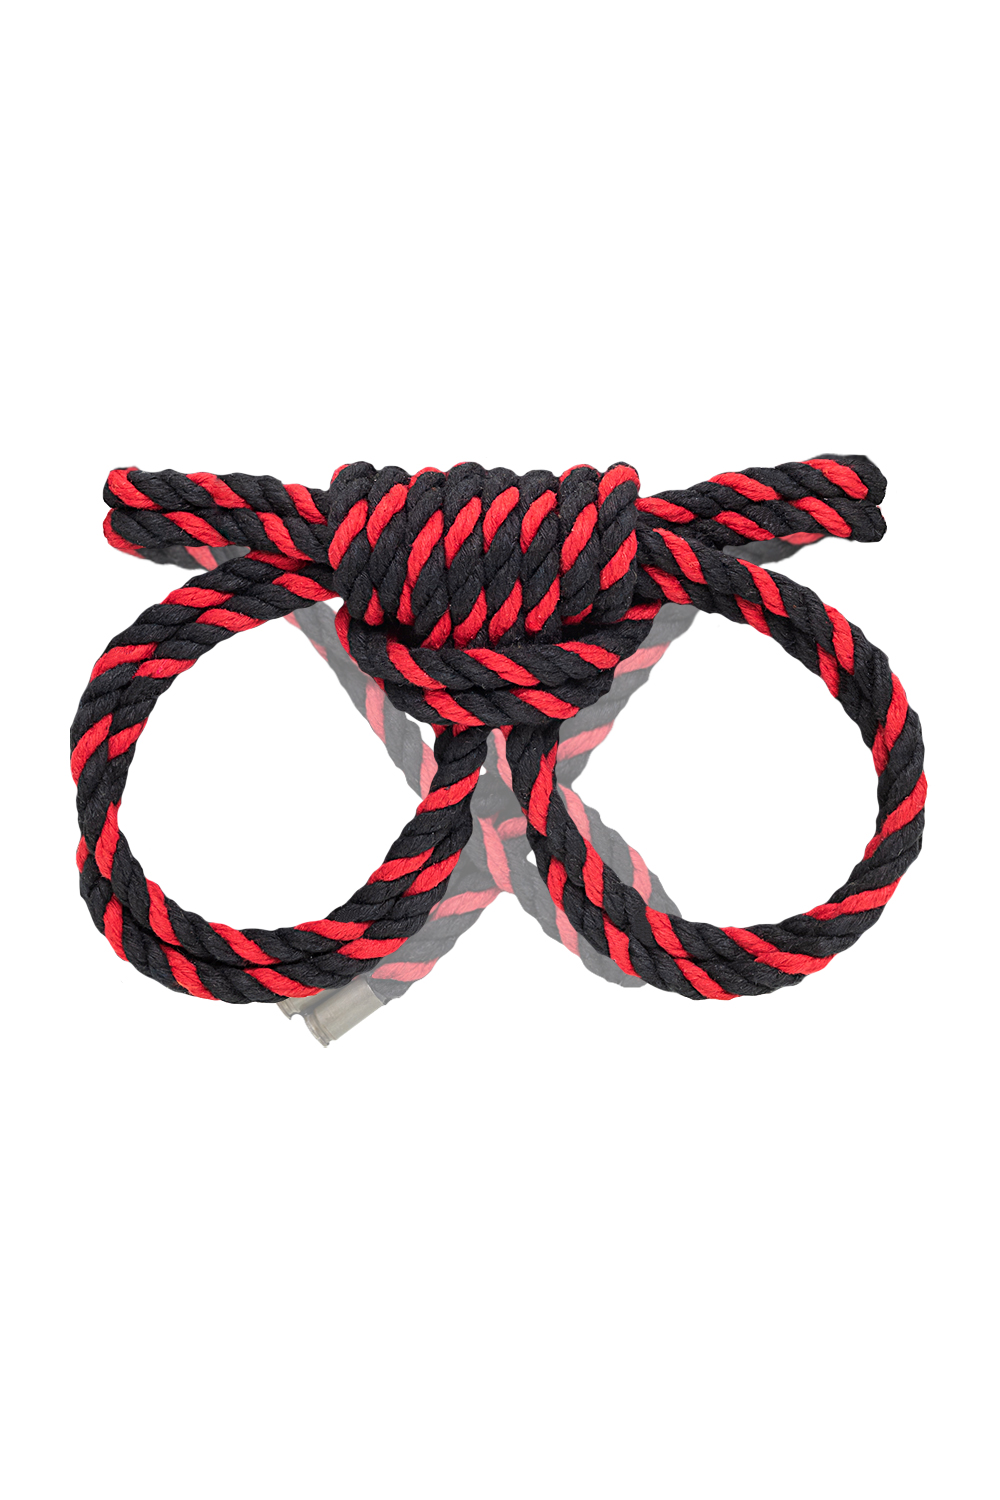 Наручники-оковы Pecado BDSM Узел-омега из хлопковой веревки черно-красные 3,5 м